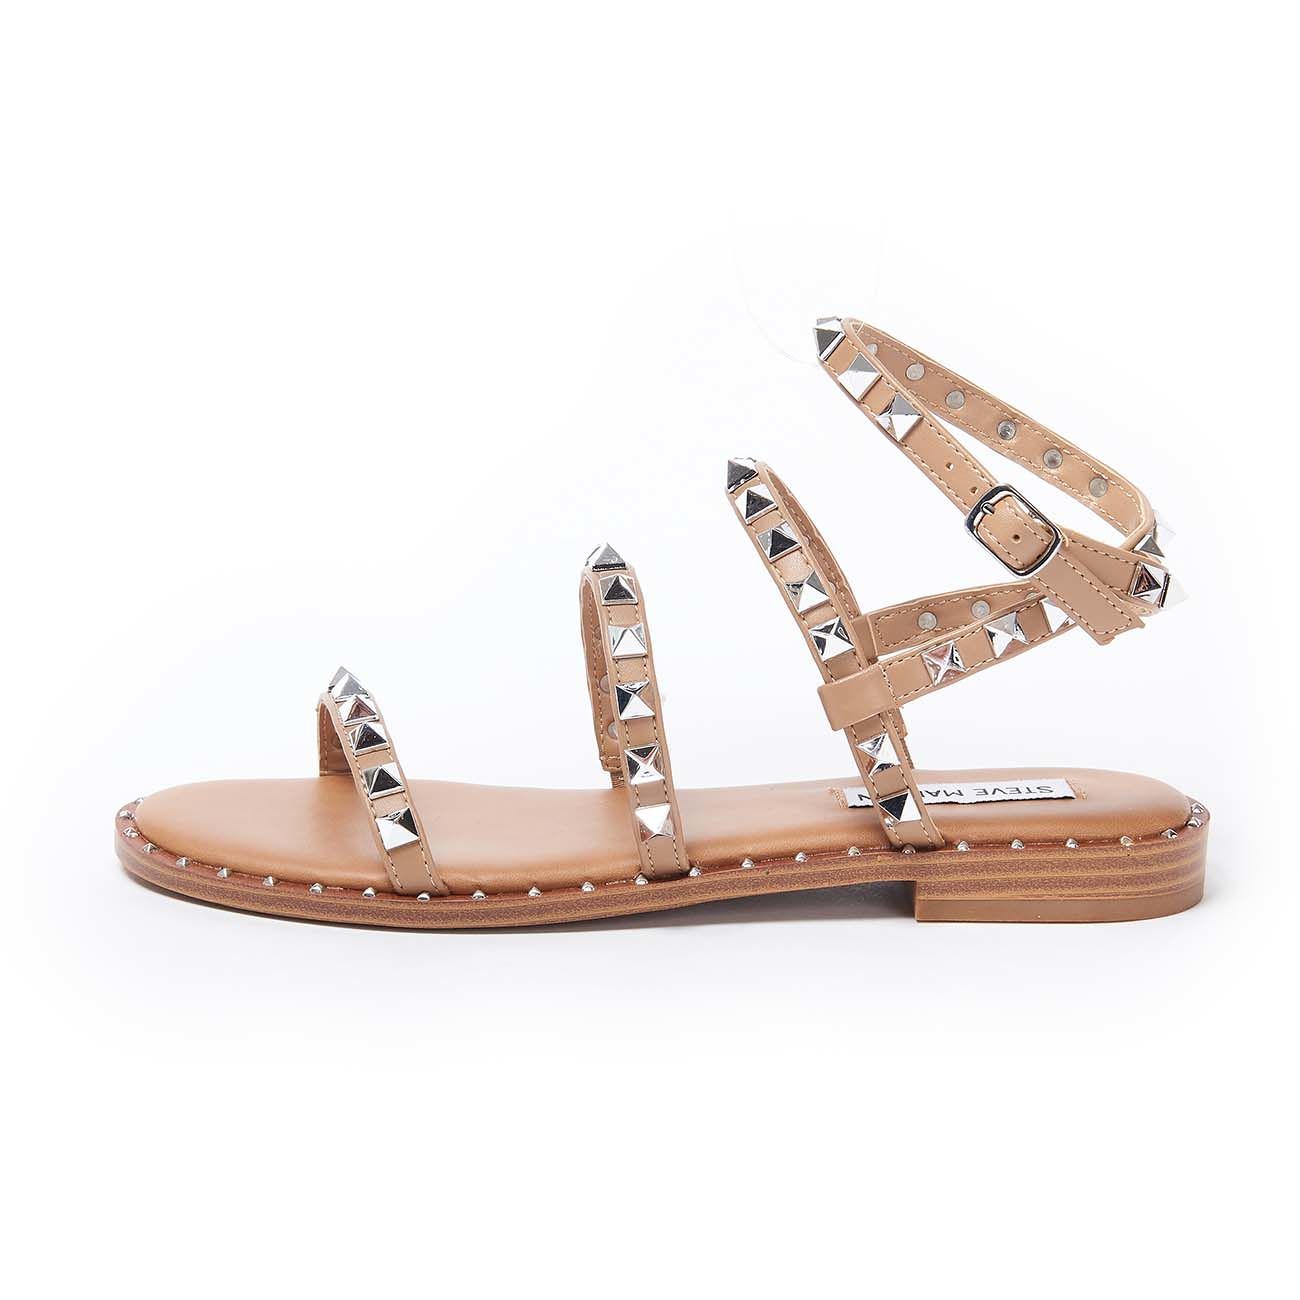 Steve Madden Travel Stud Sandal in Tan • Impressions Online Boutique